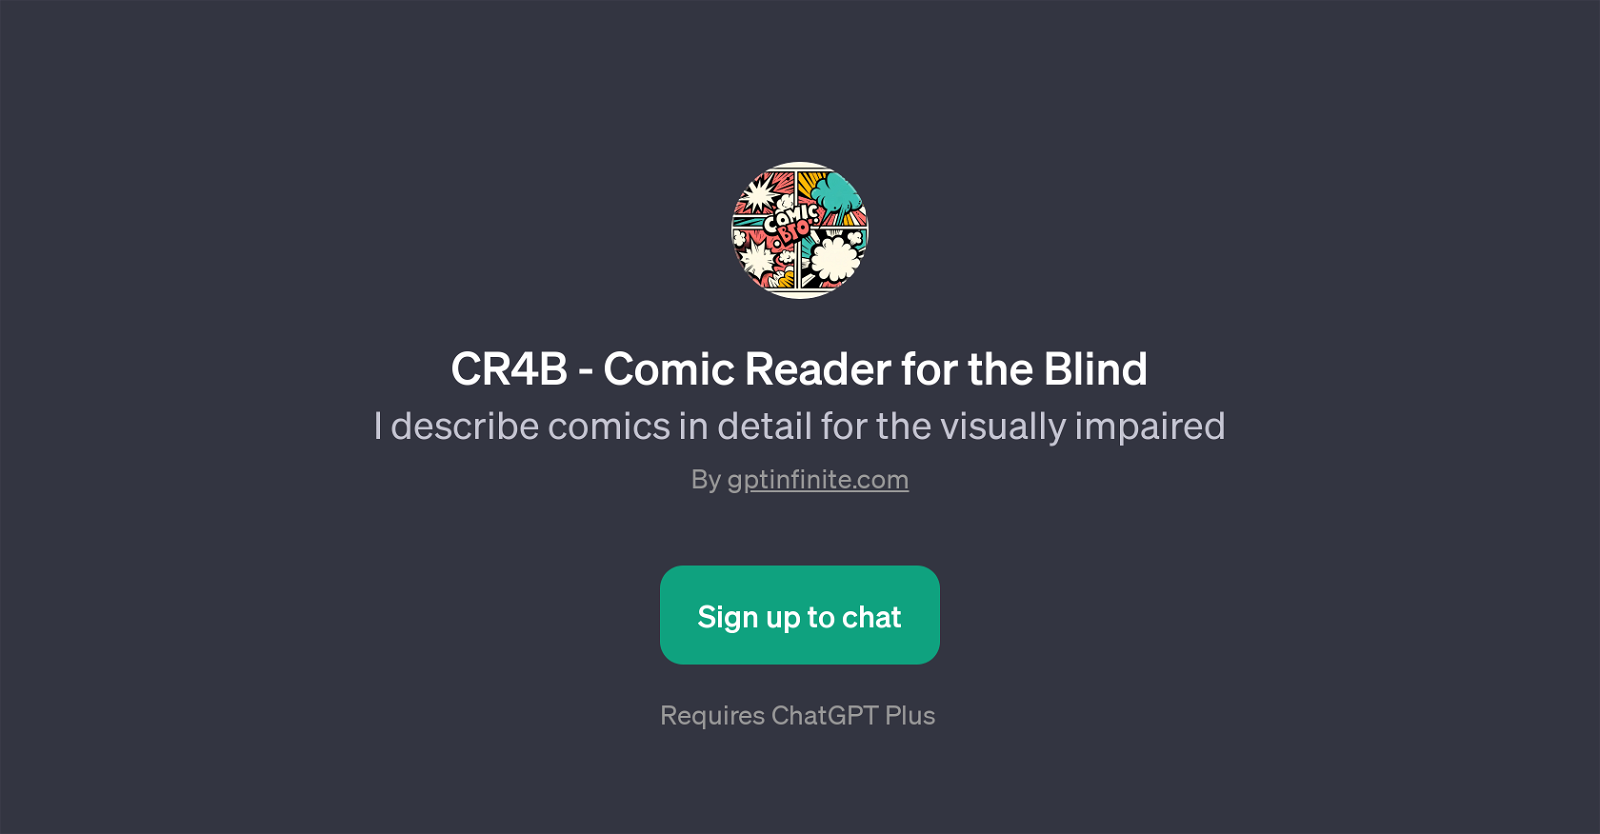 CR4B - Comic Reader for the Blind website